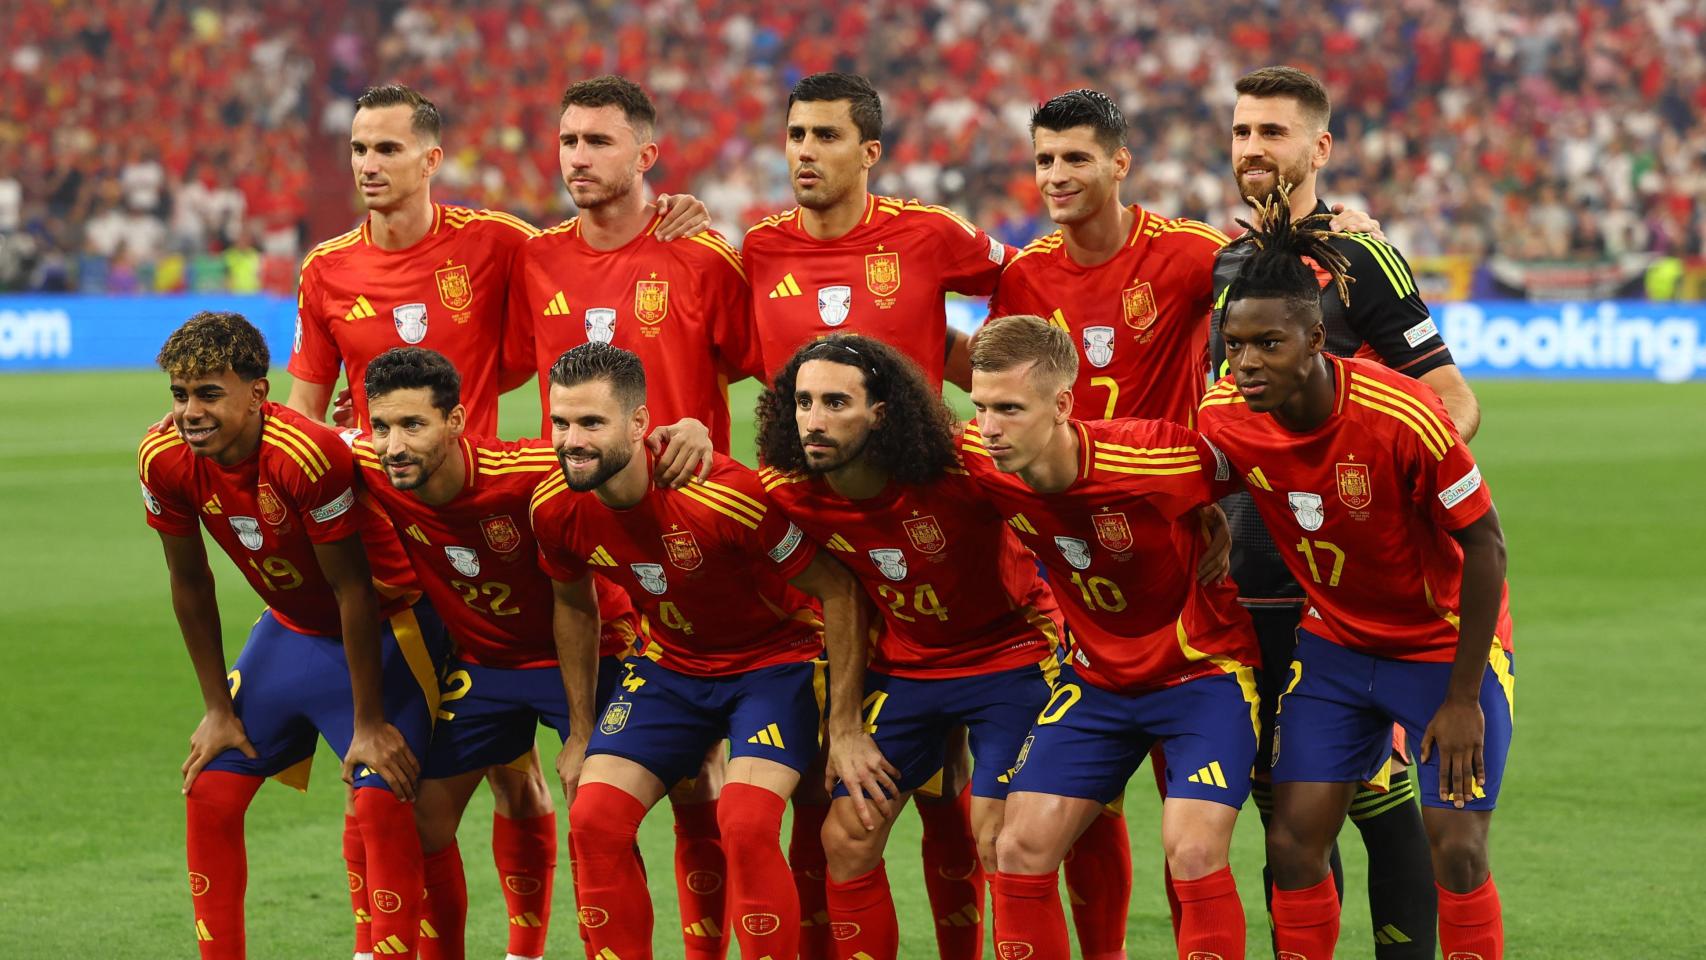 La alineación de España contra Alemania en la Eurocopa